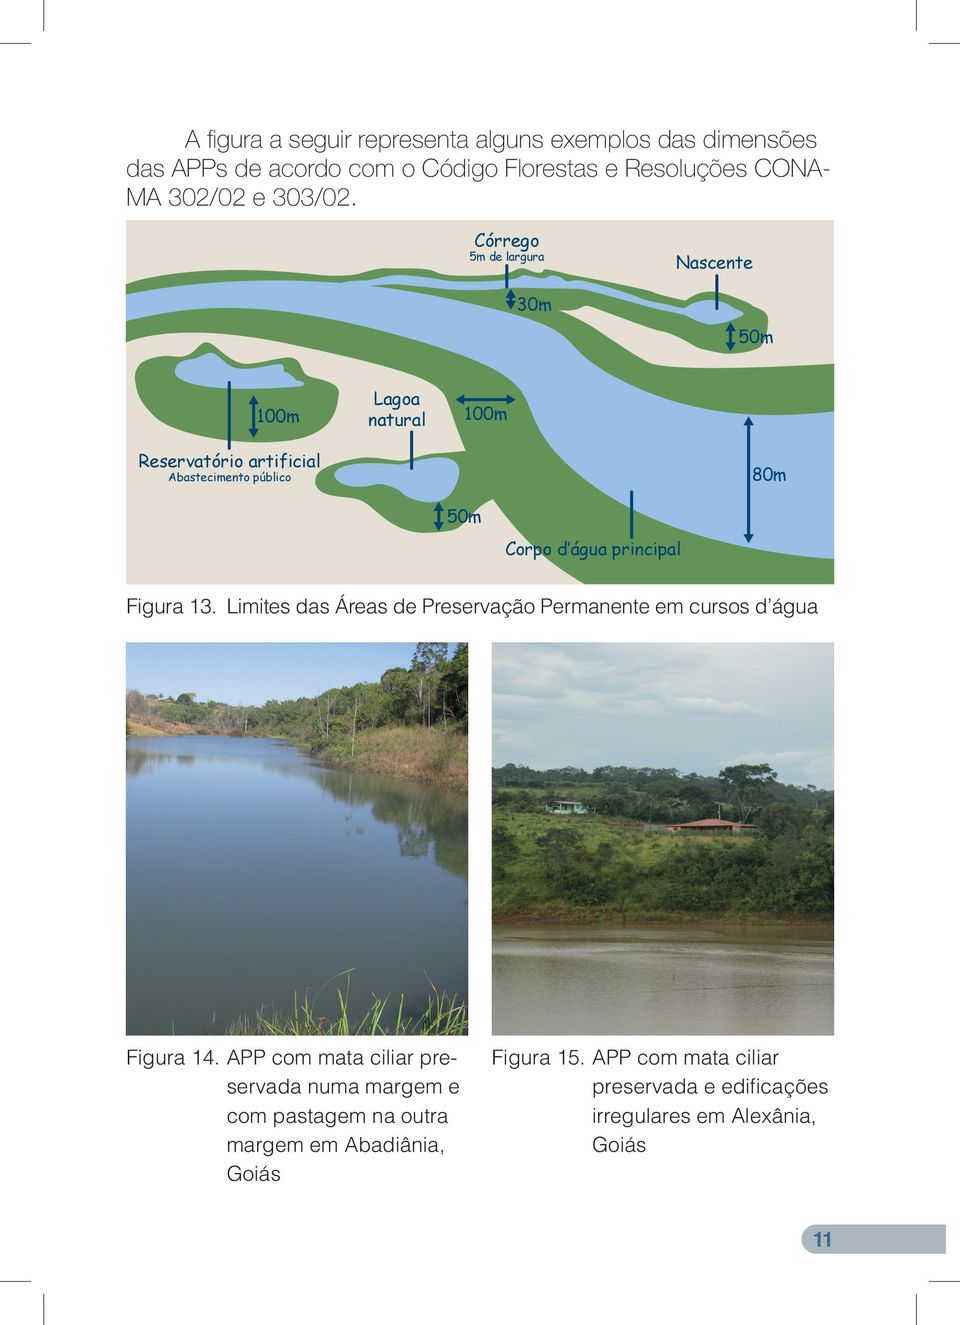 Córrego 5m de largura 30m Nascente 50m 100m Lagoa natural 100m Reservatório artificial Abastecimento público 80m 50m Corpo d água